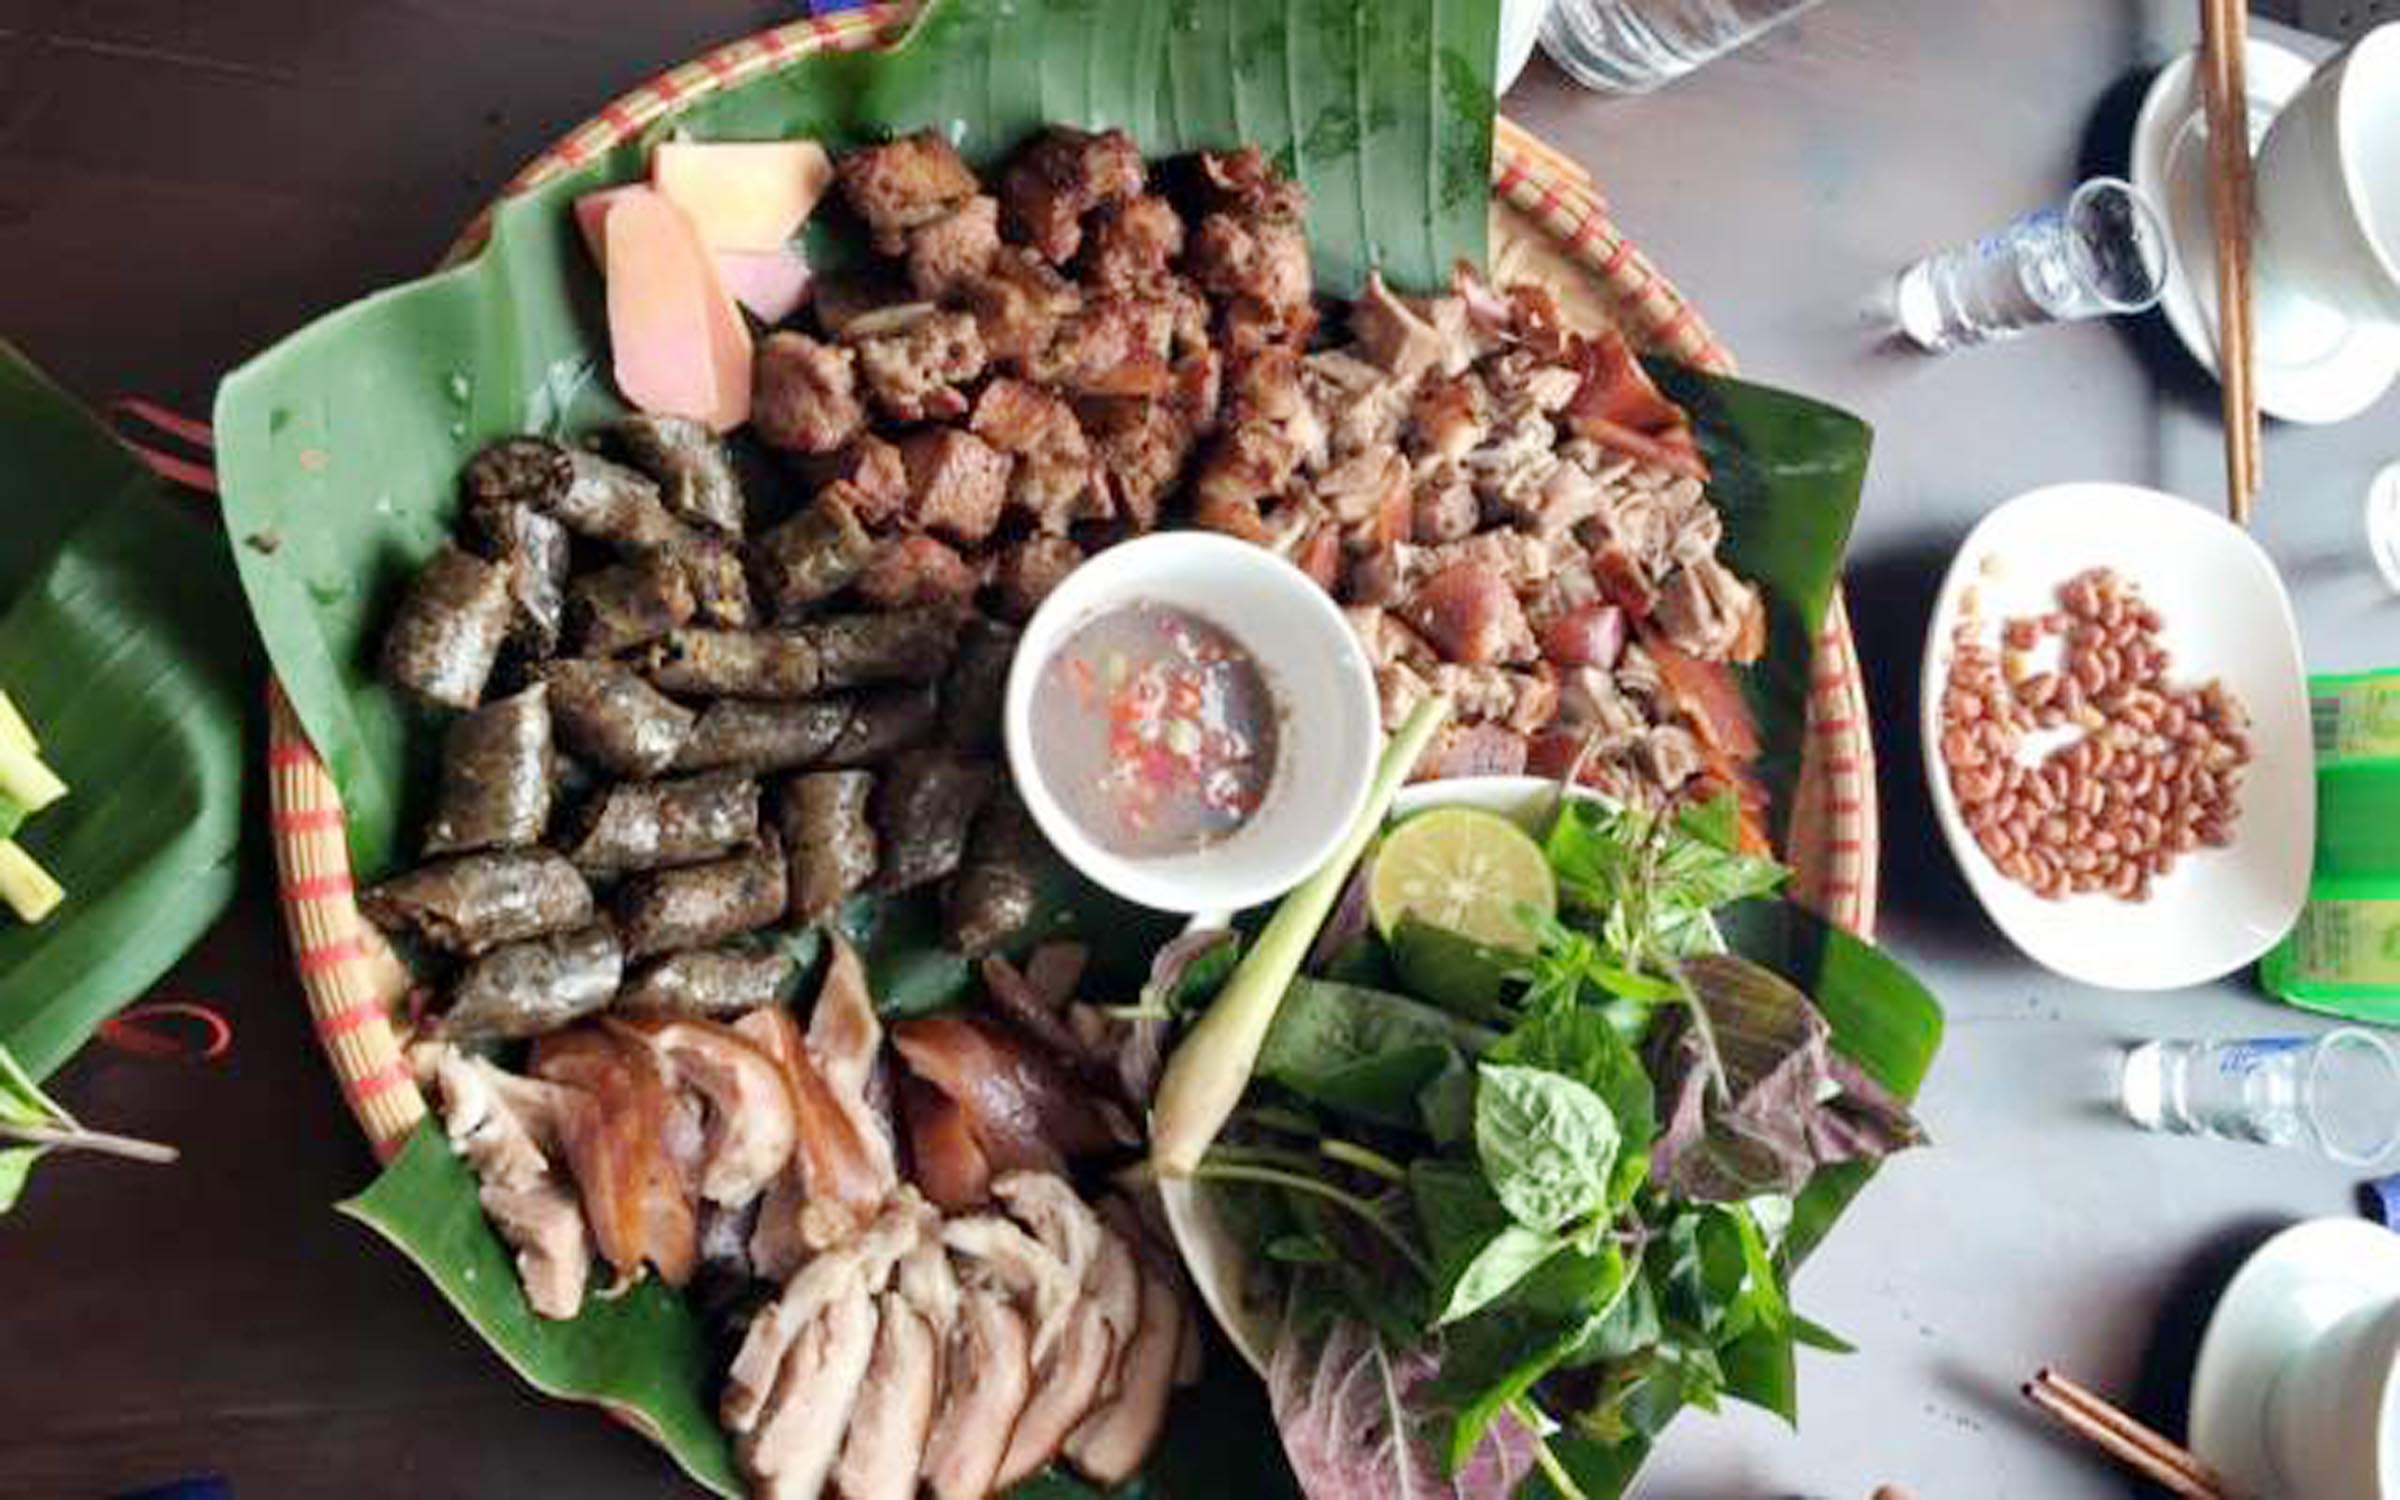 Nếu bạn muốn trải nghiệm thử thách ẩm thực thú vị, hãy thử ăn thịt chó, một món ăn đặc biệt của Việt Nam. Hãy xem hình ảnh để khám phá hương vị đặc trưng của thịt chó khi được chế biến một cách chuyên nghiệp!